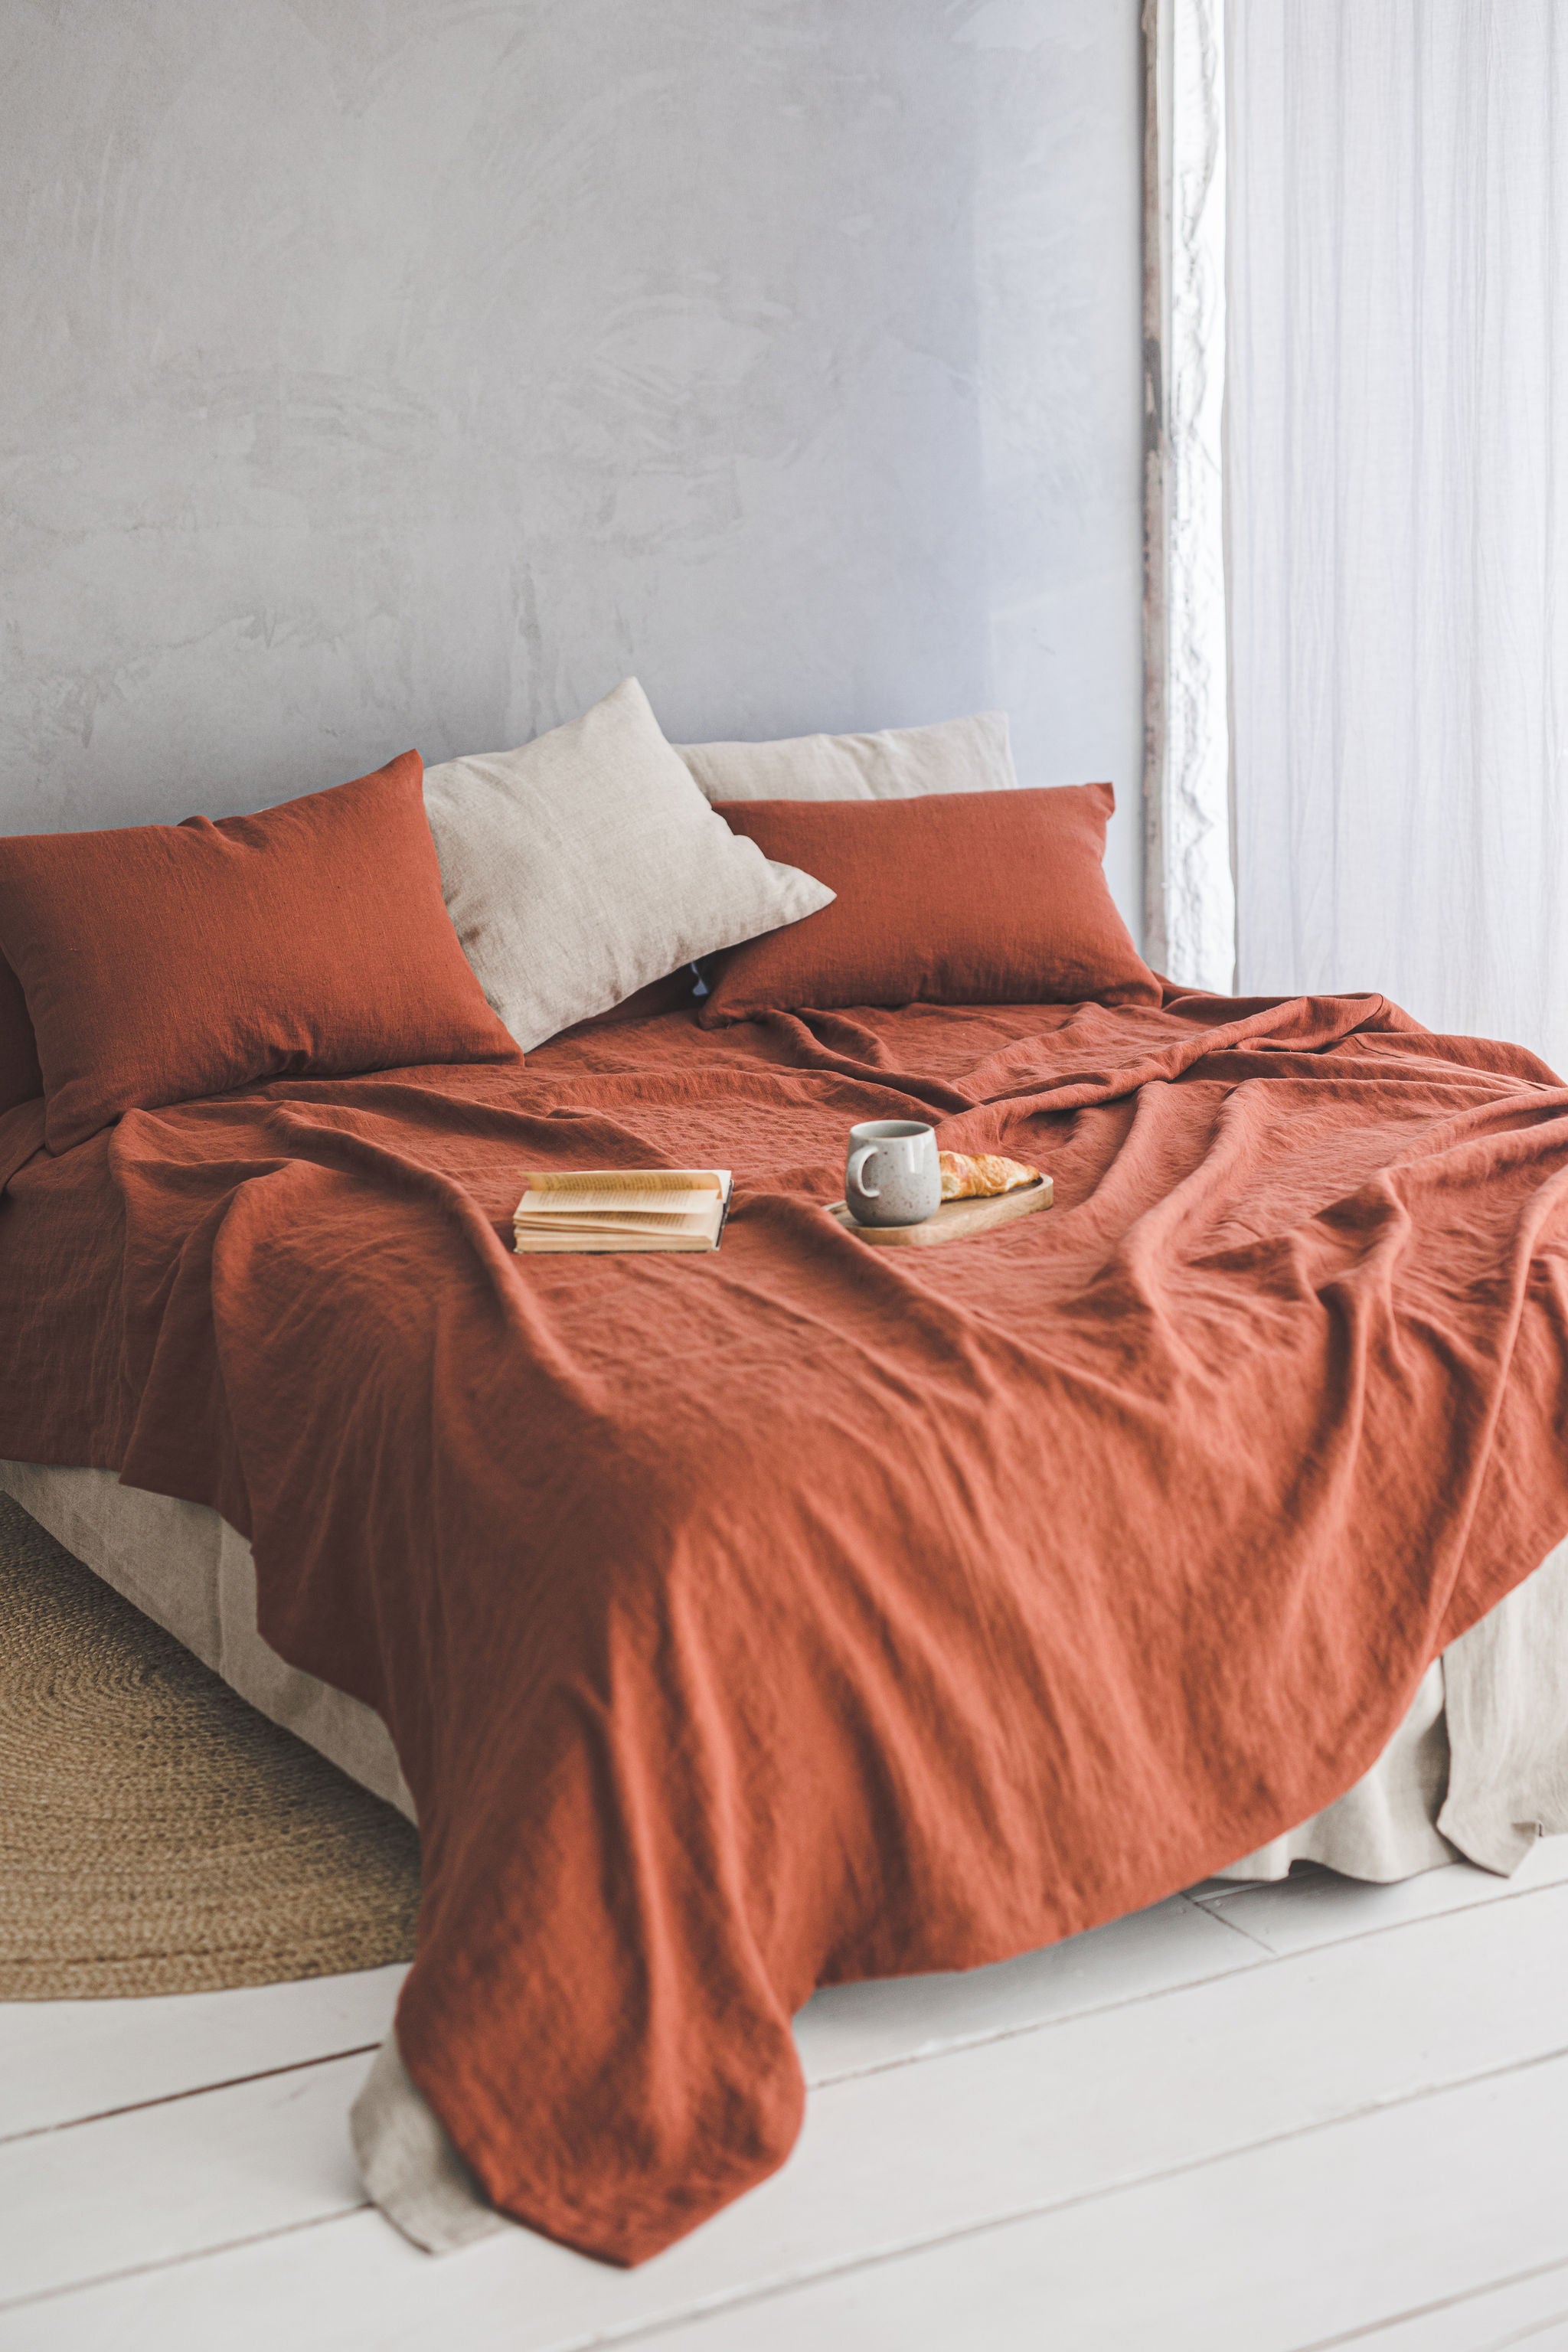 Burnt orange linen bedspread